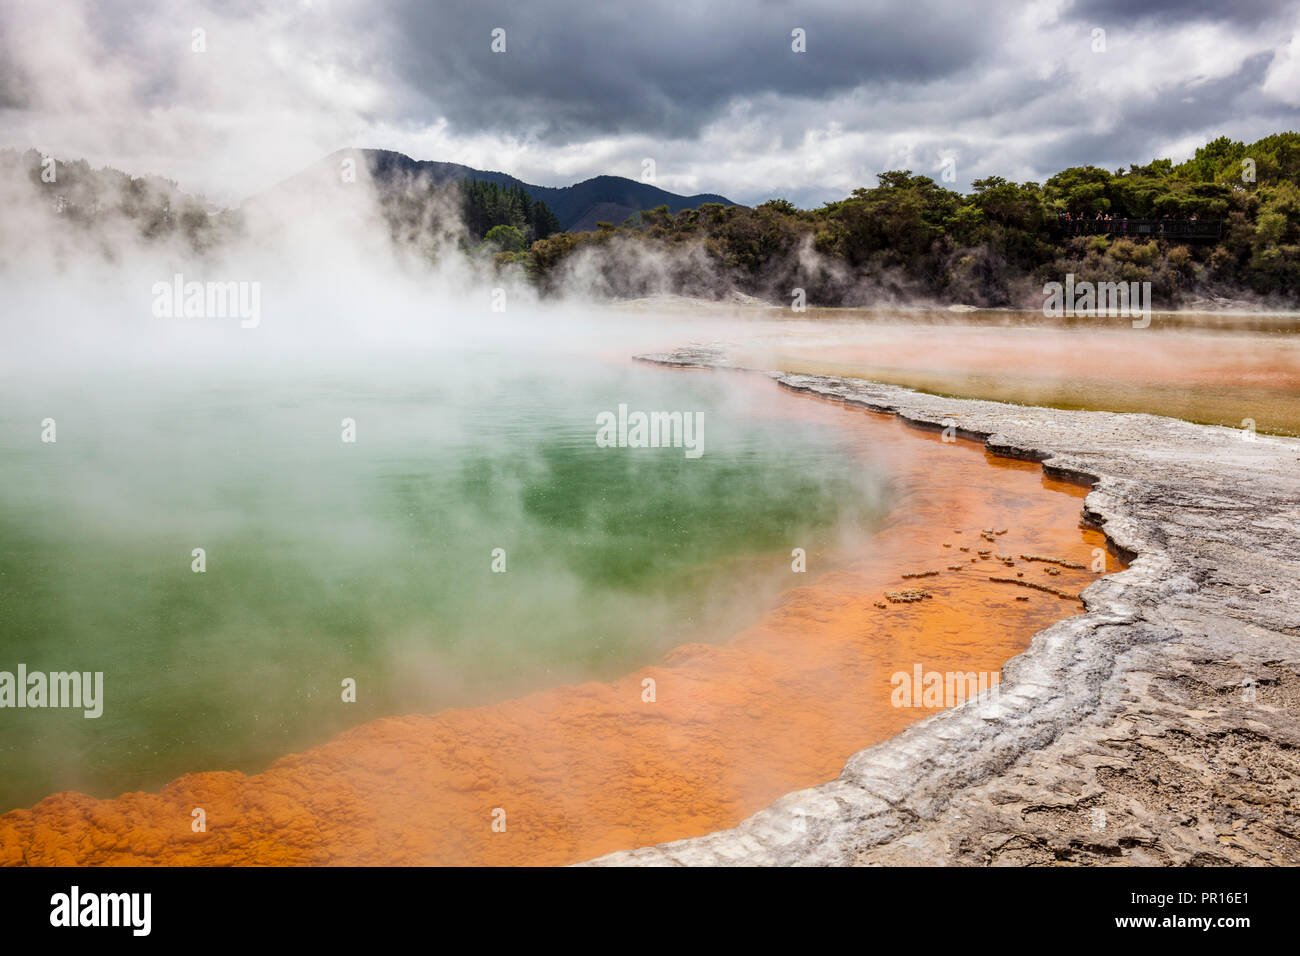 The Champagne Pool, Wai-o-tapu Thermal Wonderland, geothermal area, Waiotapu, Rotorua, North Island, New Zealand, Pacific Stock Photo